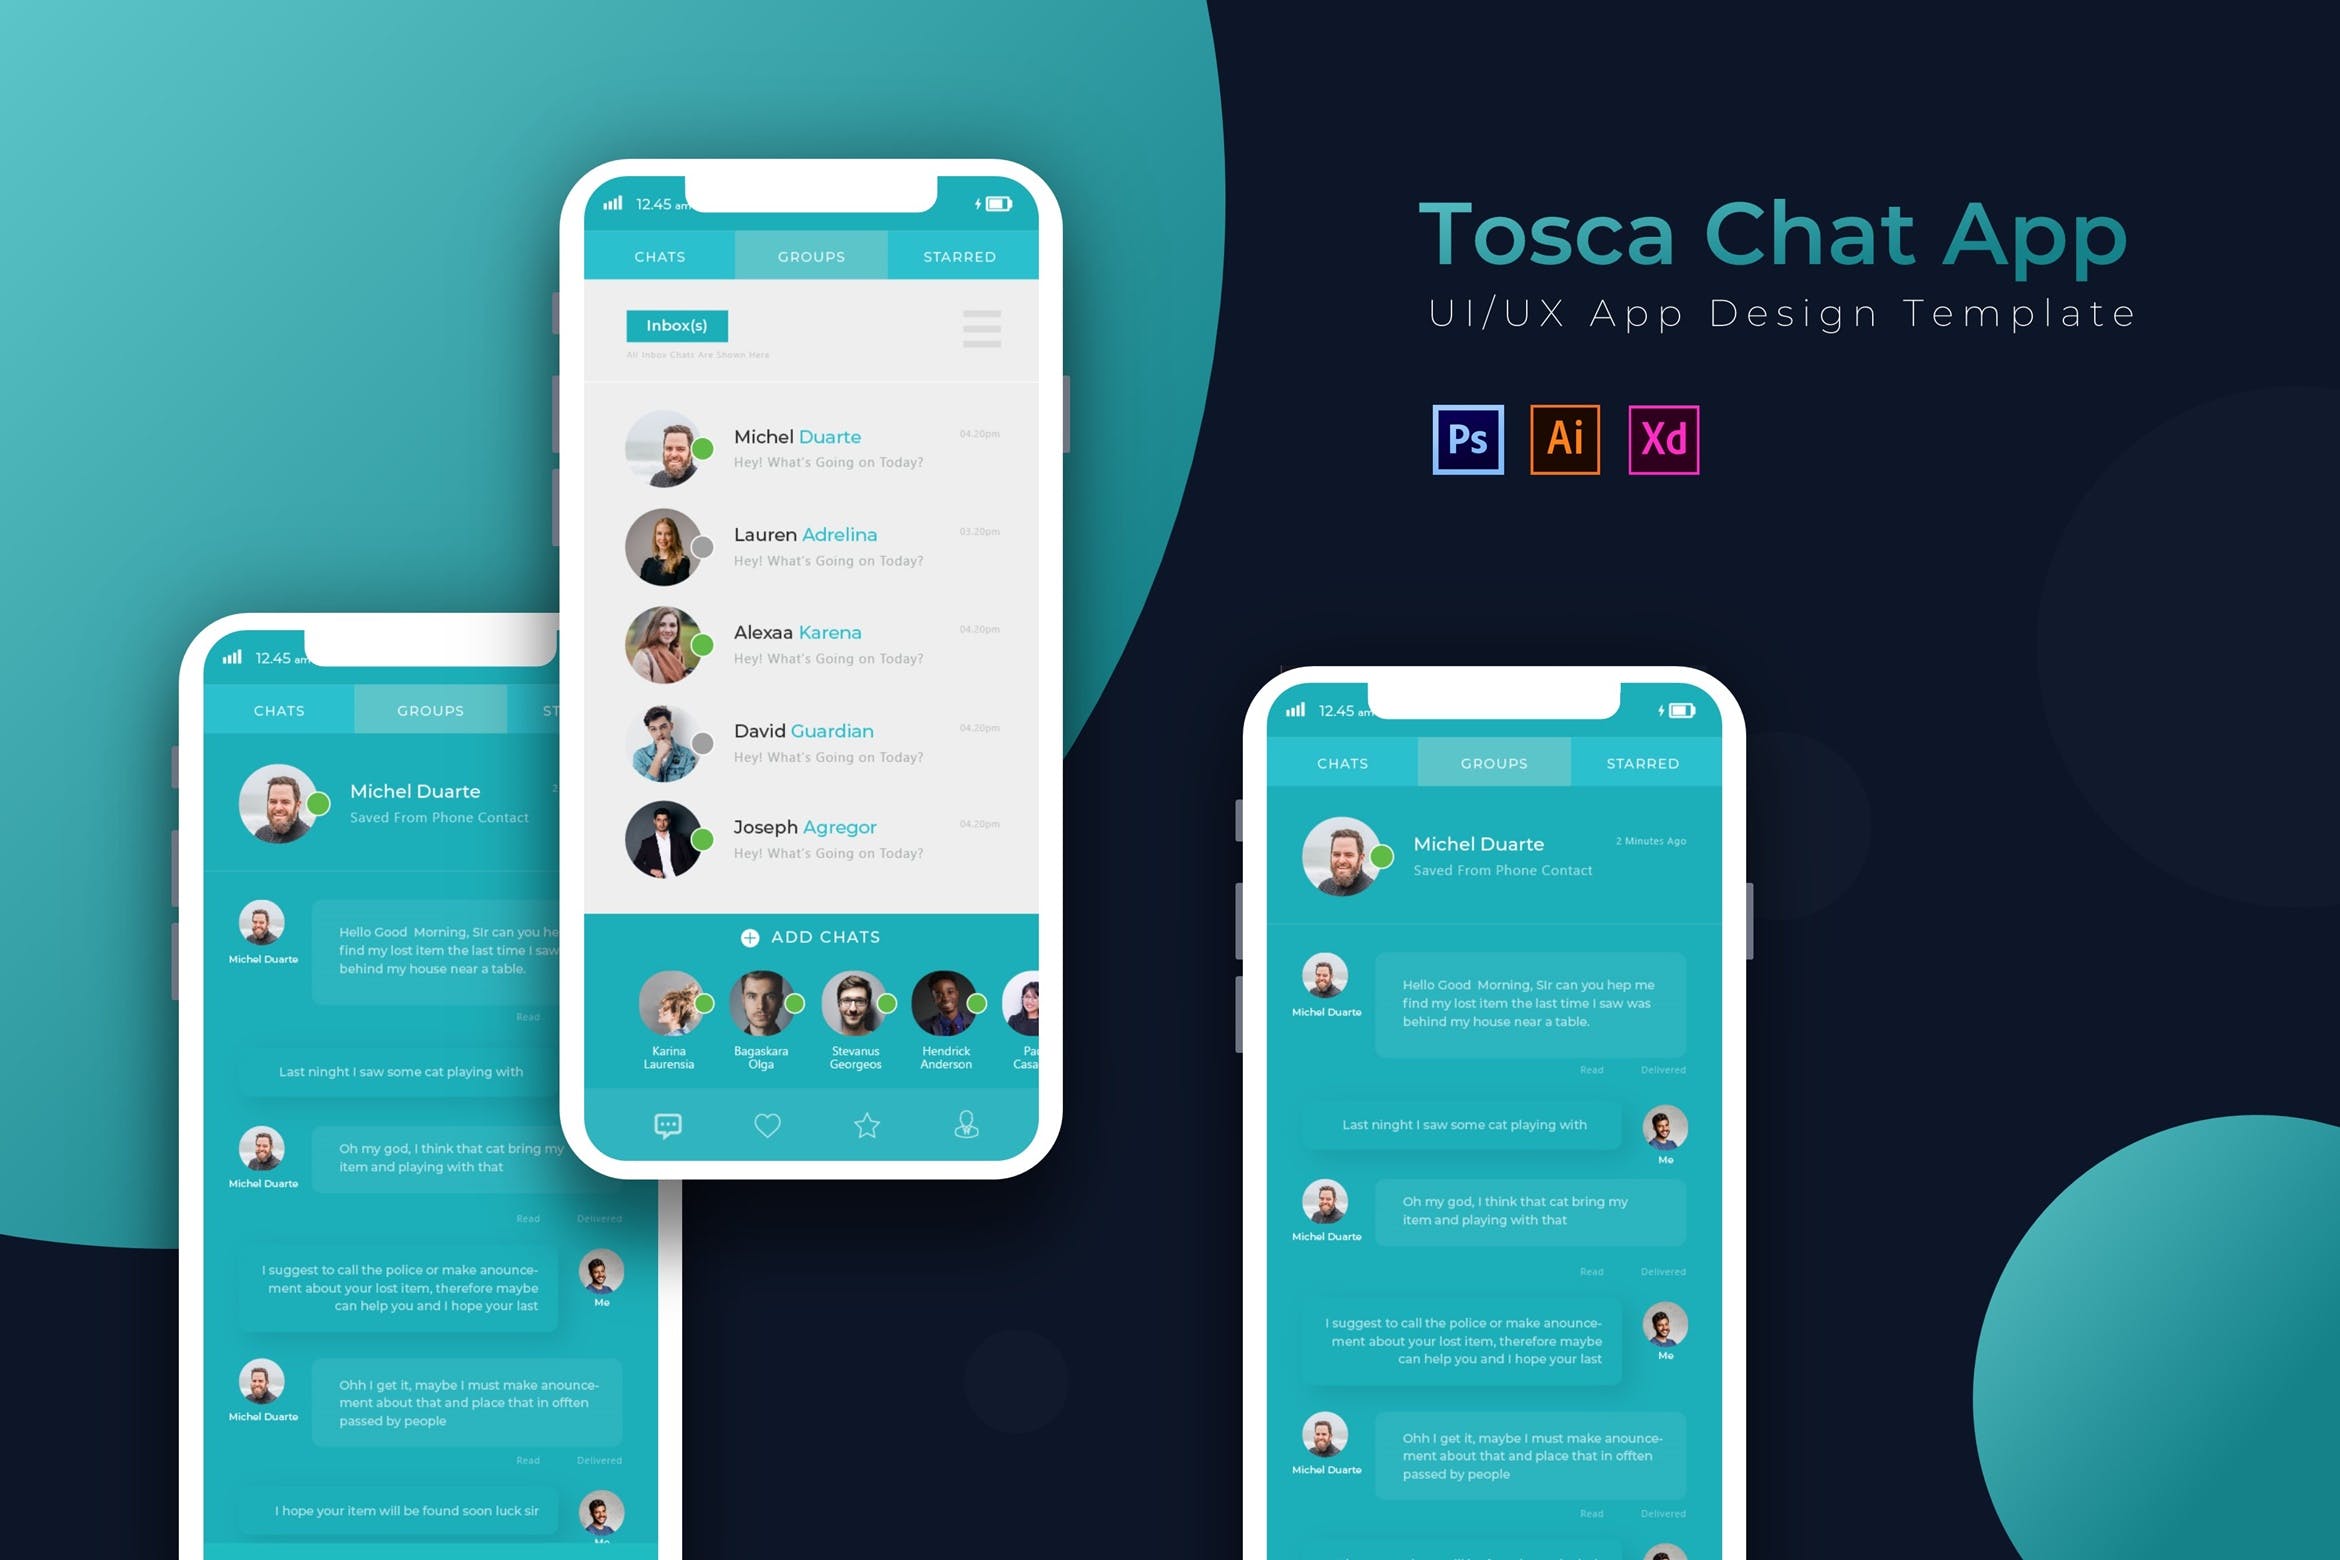 社交即时聊天应用UI界面设计第一素材精选模板 Chating | App Template插图